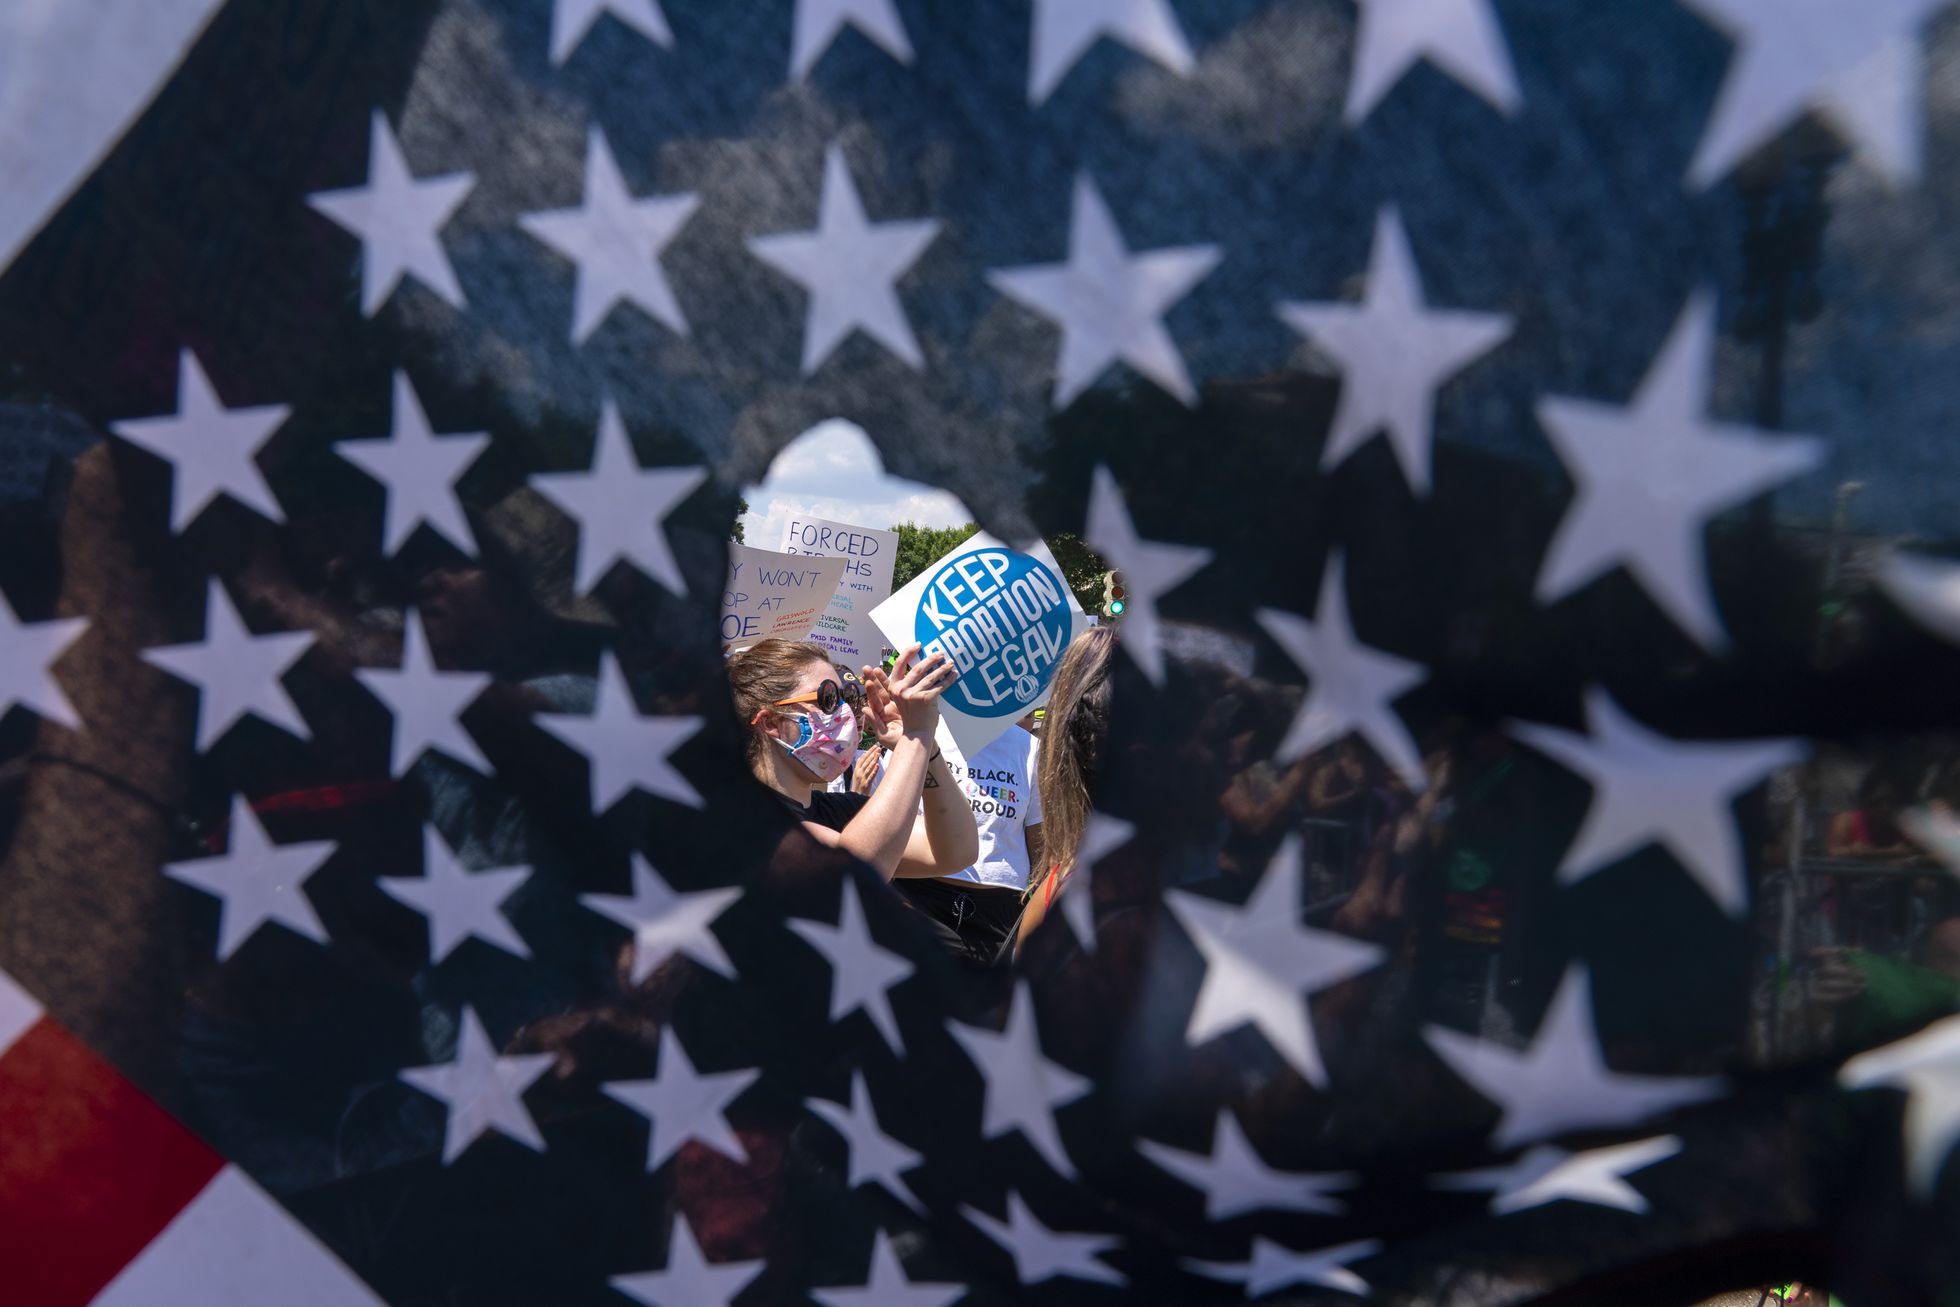 A través de un agujero en una bandera estadounidense, se observa a activistas que sostienen un letrero que dice "Mantengan legal el aborto", el 25 de junio de 2022, en Washington D. C. Foto: El País